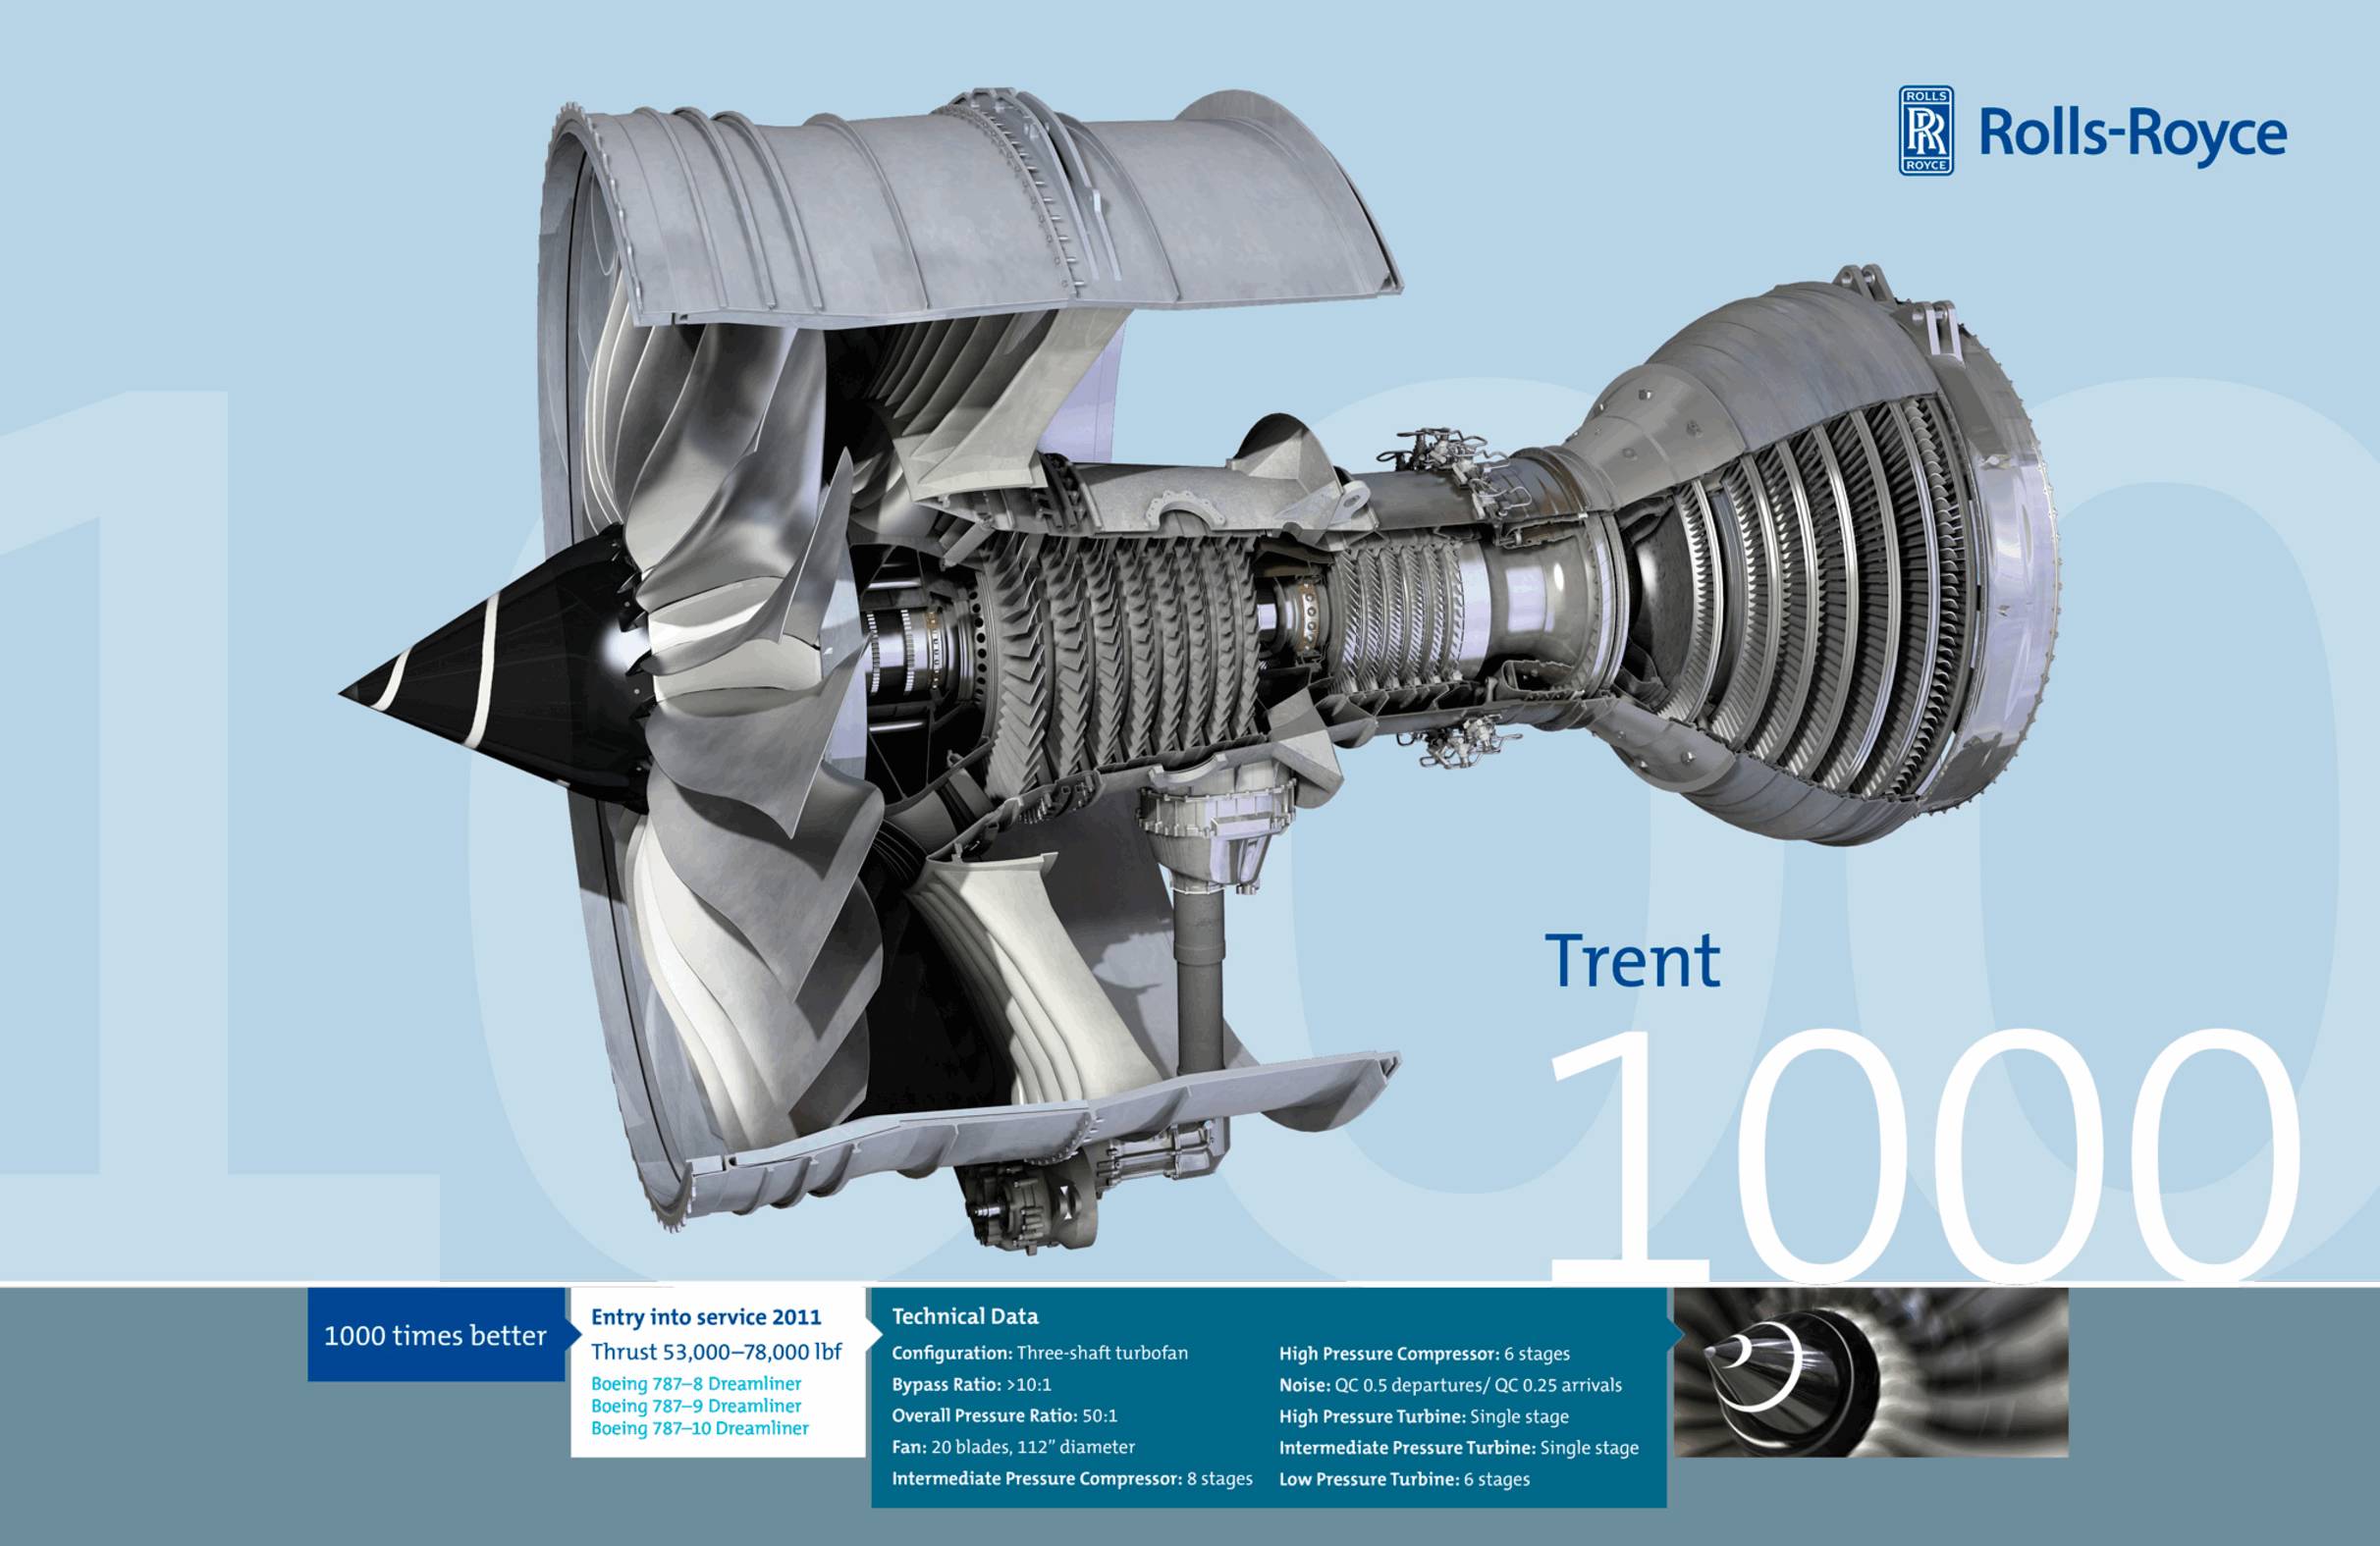 遄达1000是波音787梦想飞机的首发发动机,于2011年和2014年先后助力